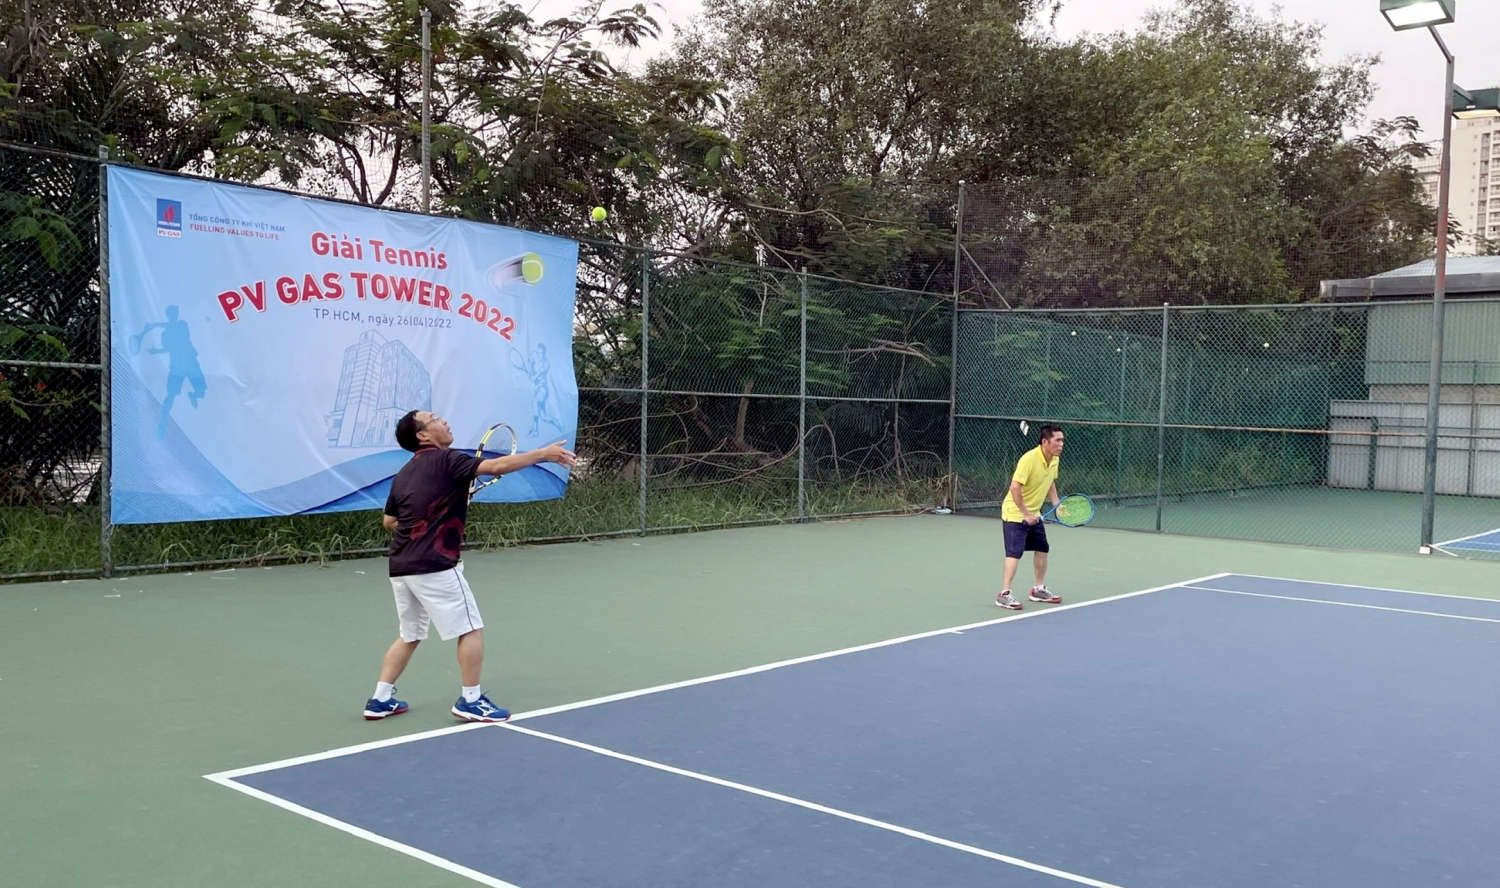 Giải Tennis PV Gas Tower 2022đã diễn ra tại sân tennis Trần Thái, Nhà Bè, Tp HCM